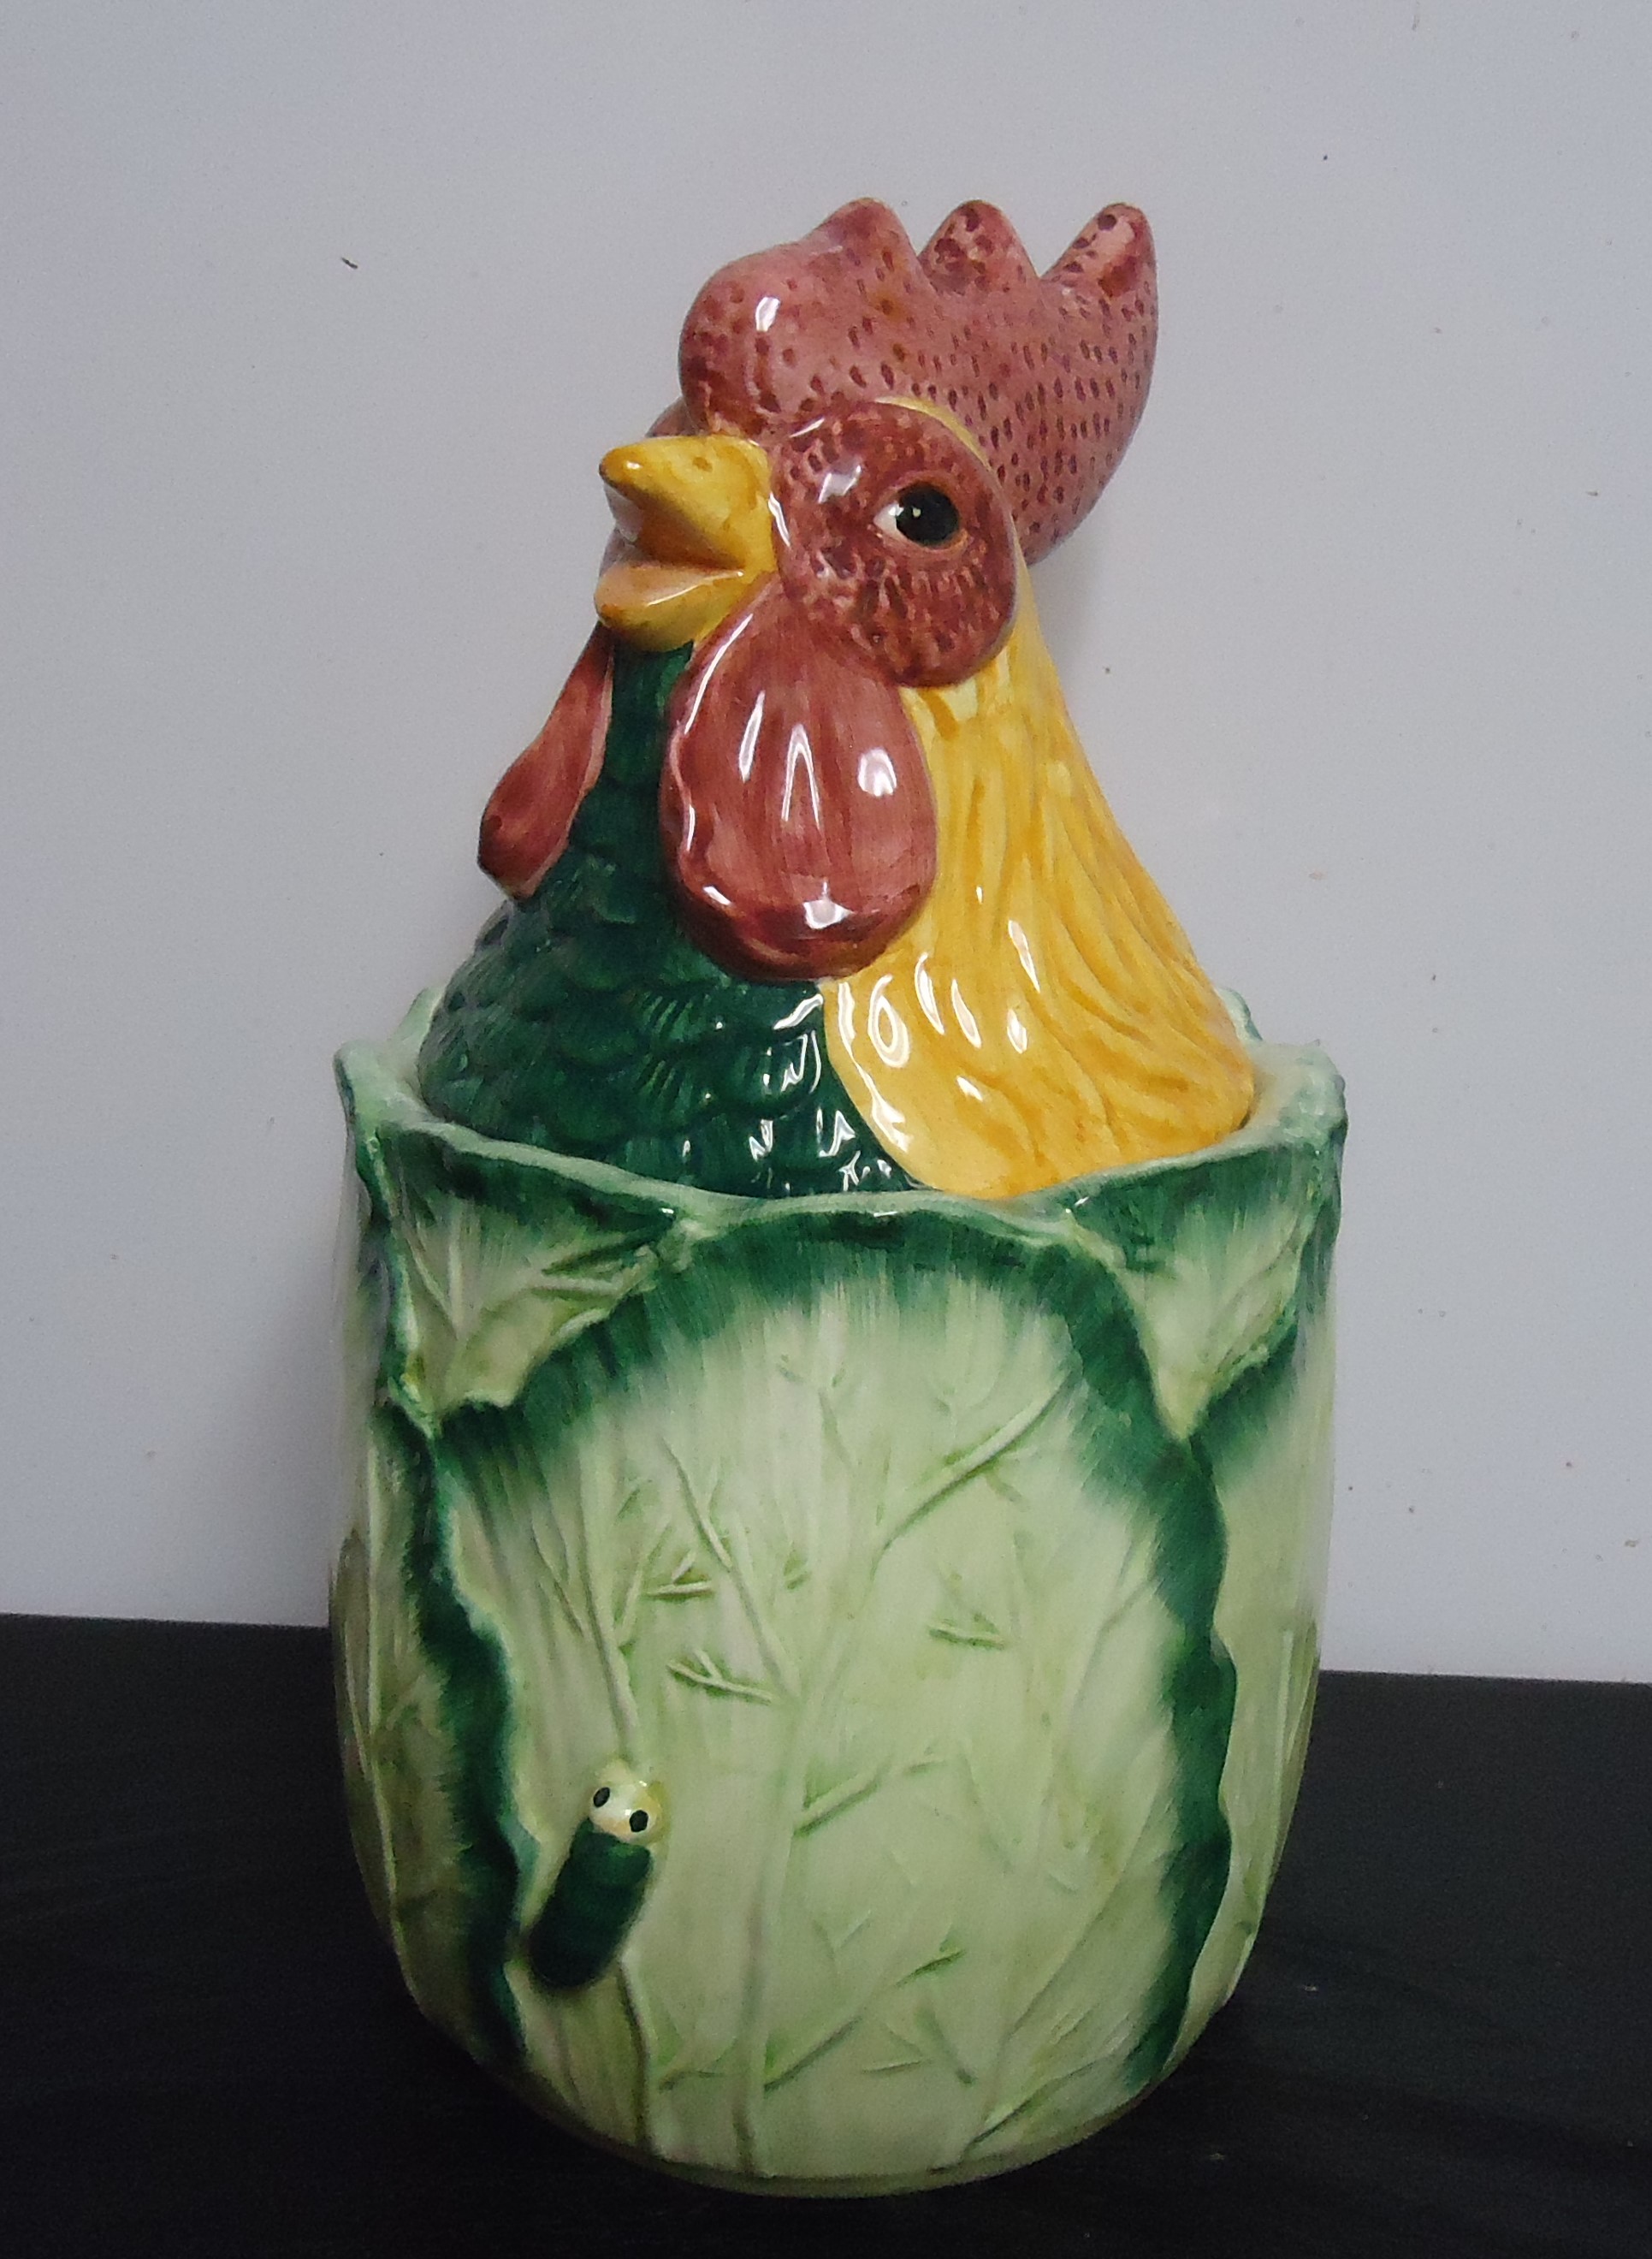 (9) "Vintage" Rooster Head on Cabbage
Cookie Jar
$35.00